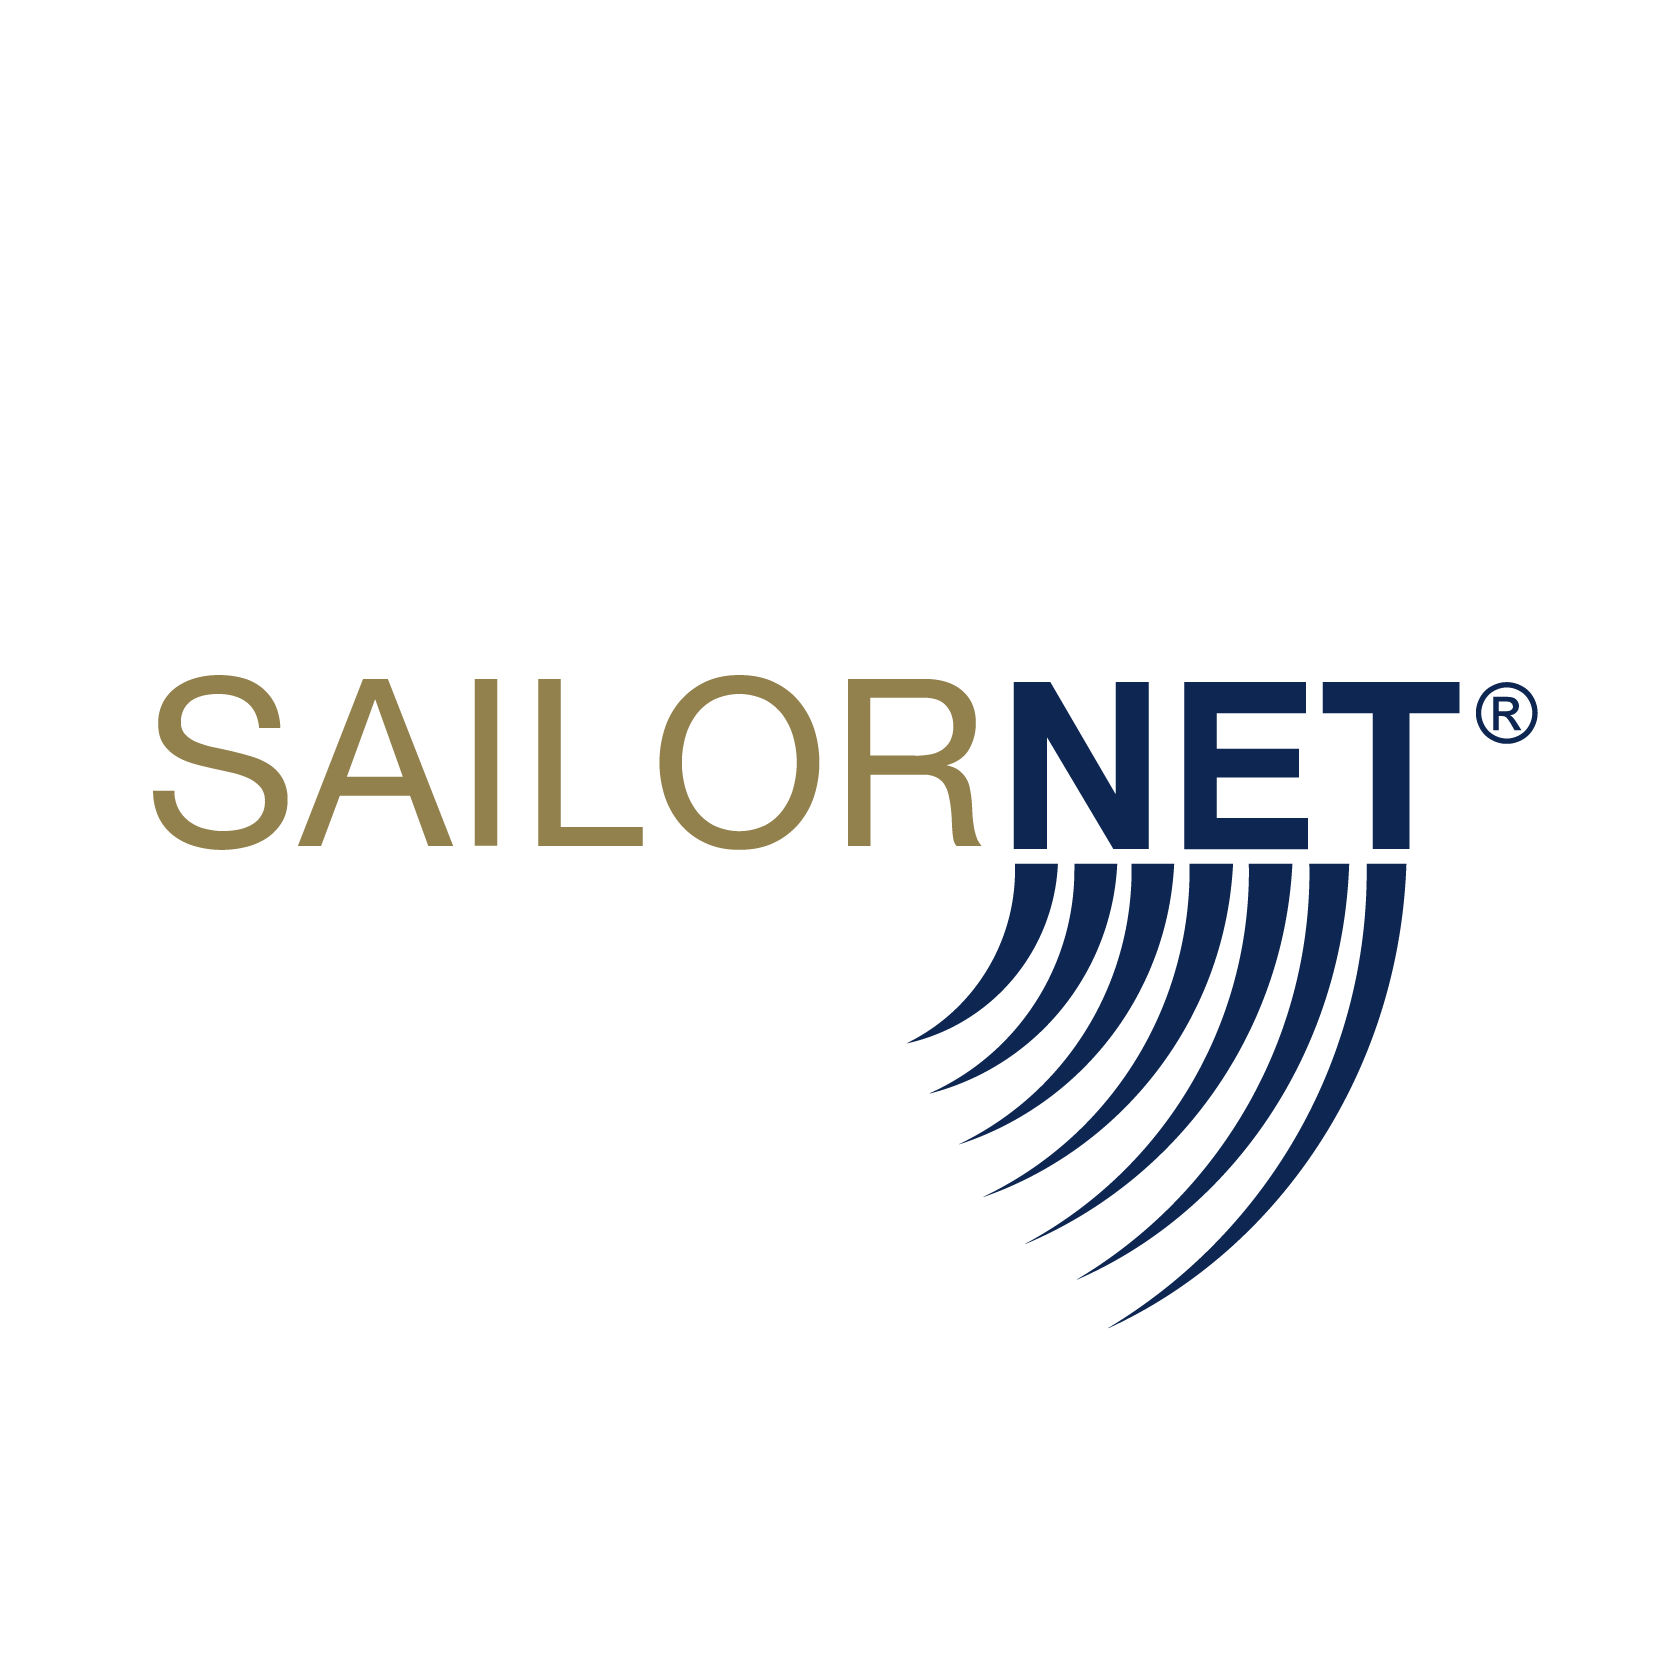 Sailornet - La tua assistenza in mare